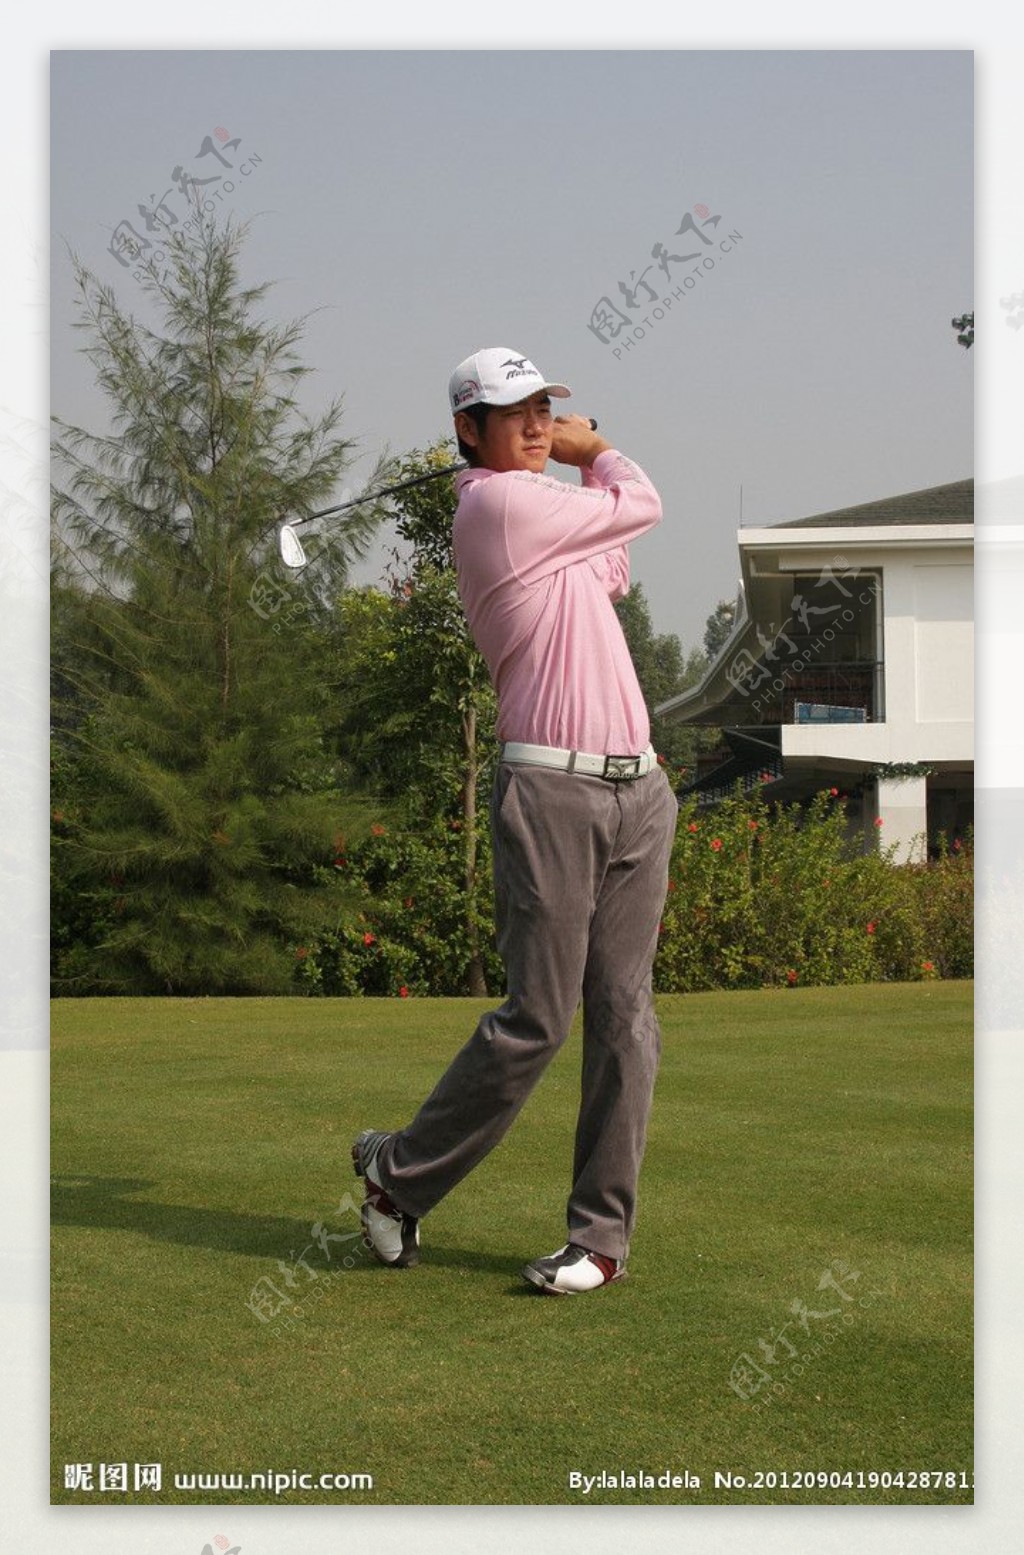 高尔夫高尔夫教练标准高尔夫图片